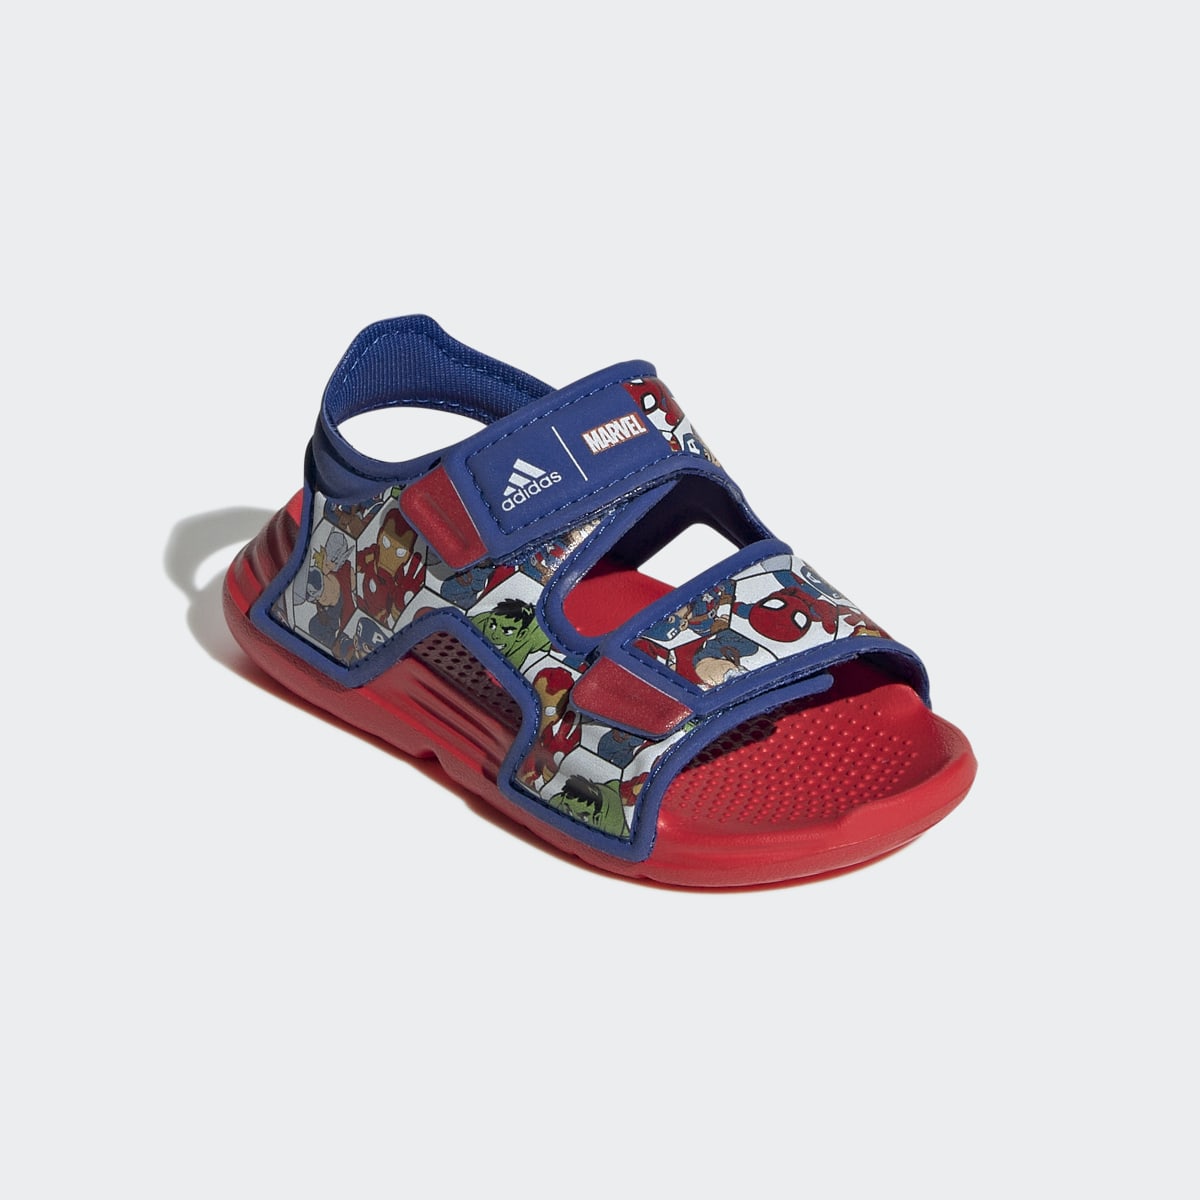 Adidas x Marvel AltaSwim Super Hero Adventures Sandals. 5